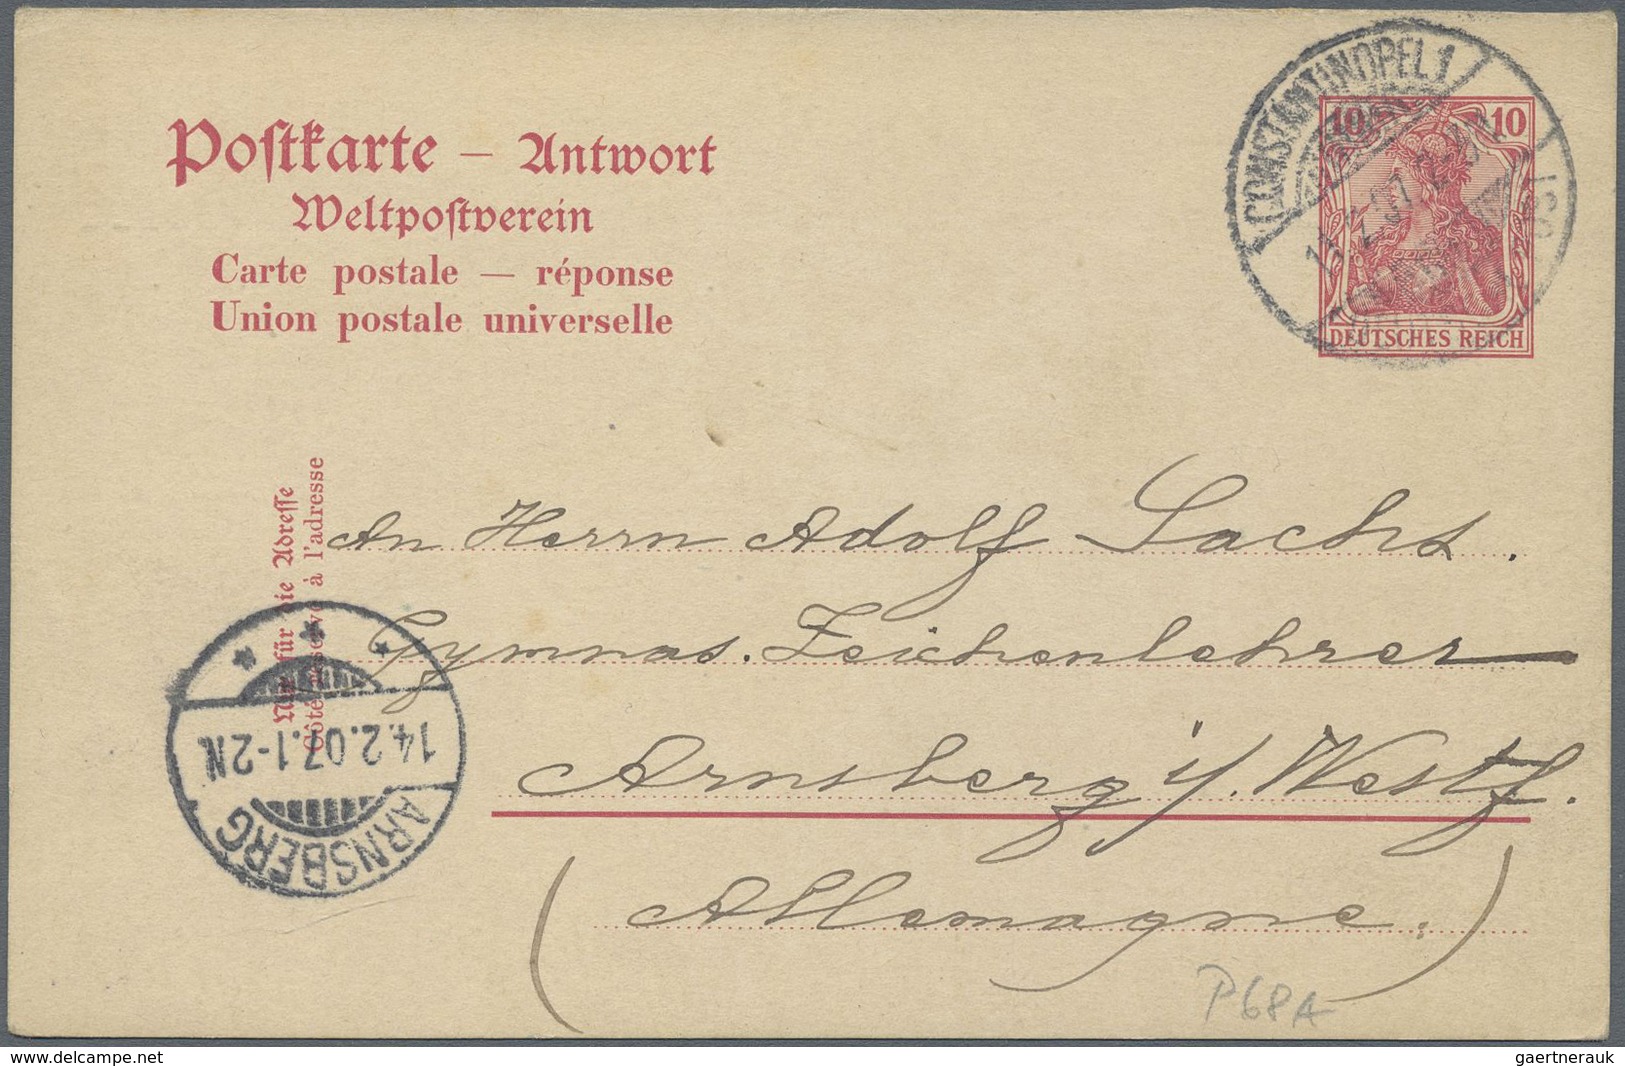 GA Deutsche Post in der Türkei - Besonderheiten: 1902/1913, sechs Bedarfs-Belege der Germania-Ausgabe (